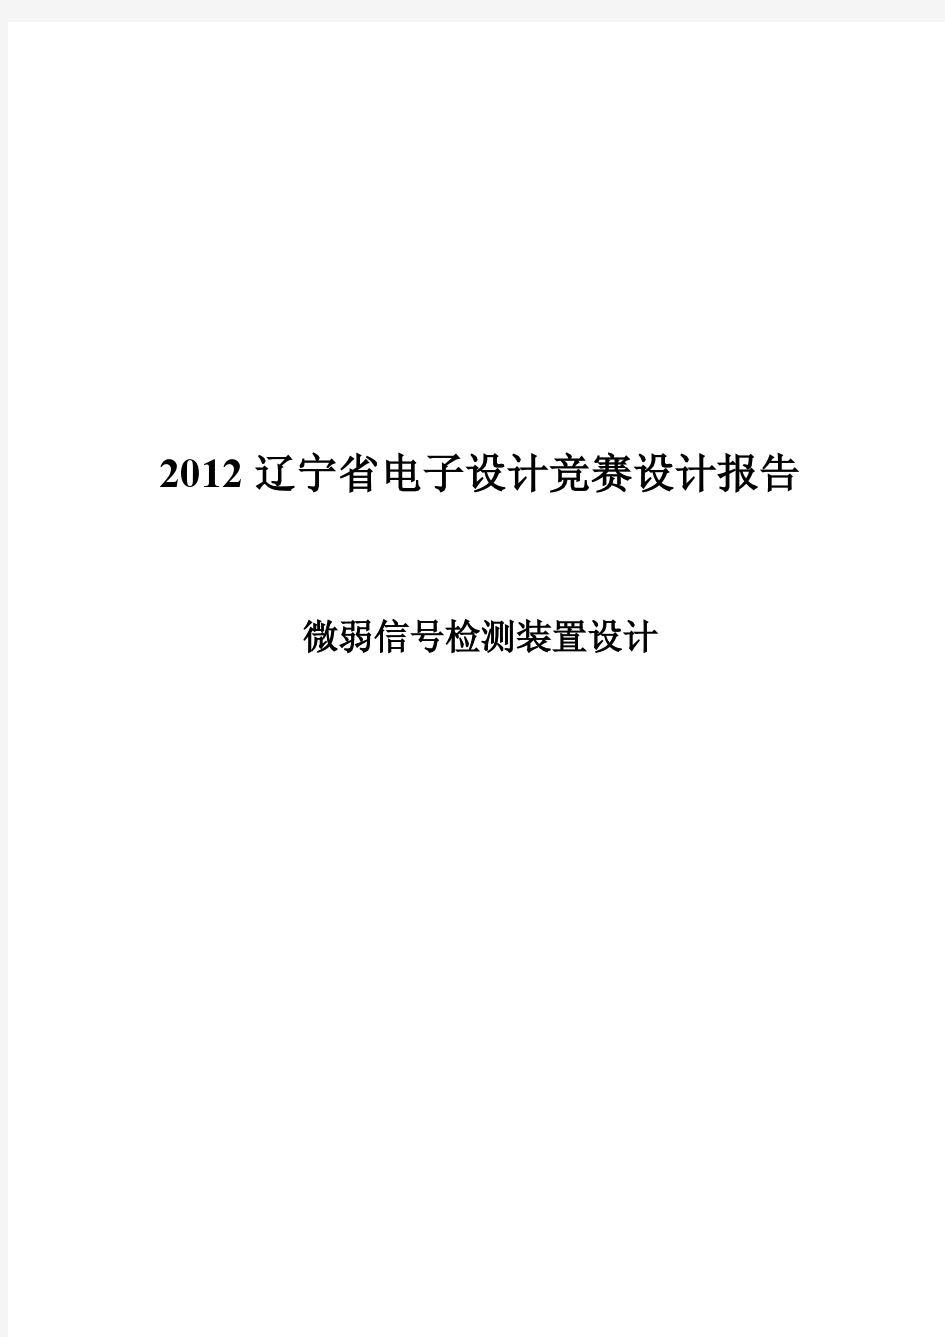 微弱信号检测装置——2012年辽宁省TI杯电子大赛一等奖论文